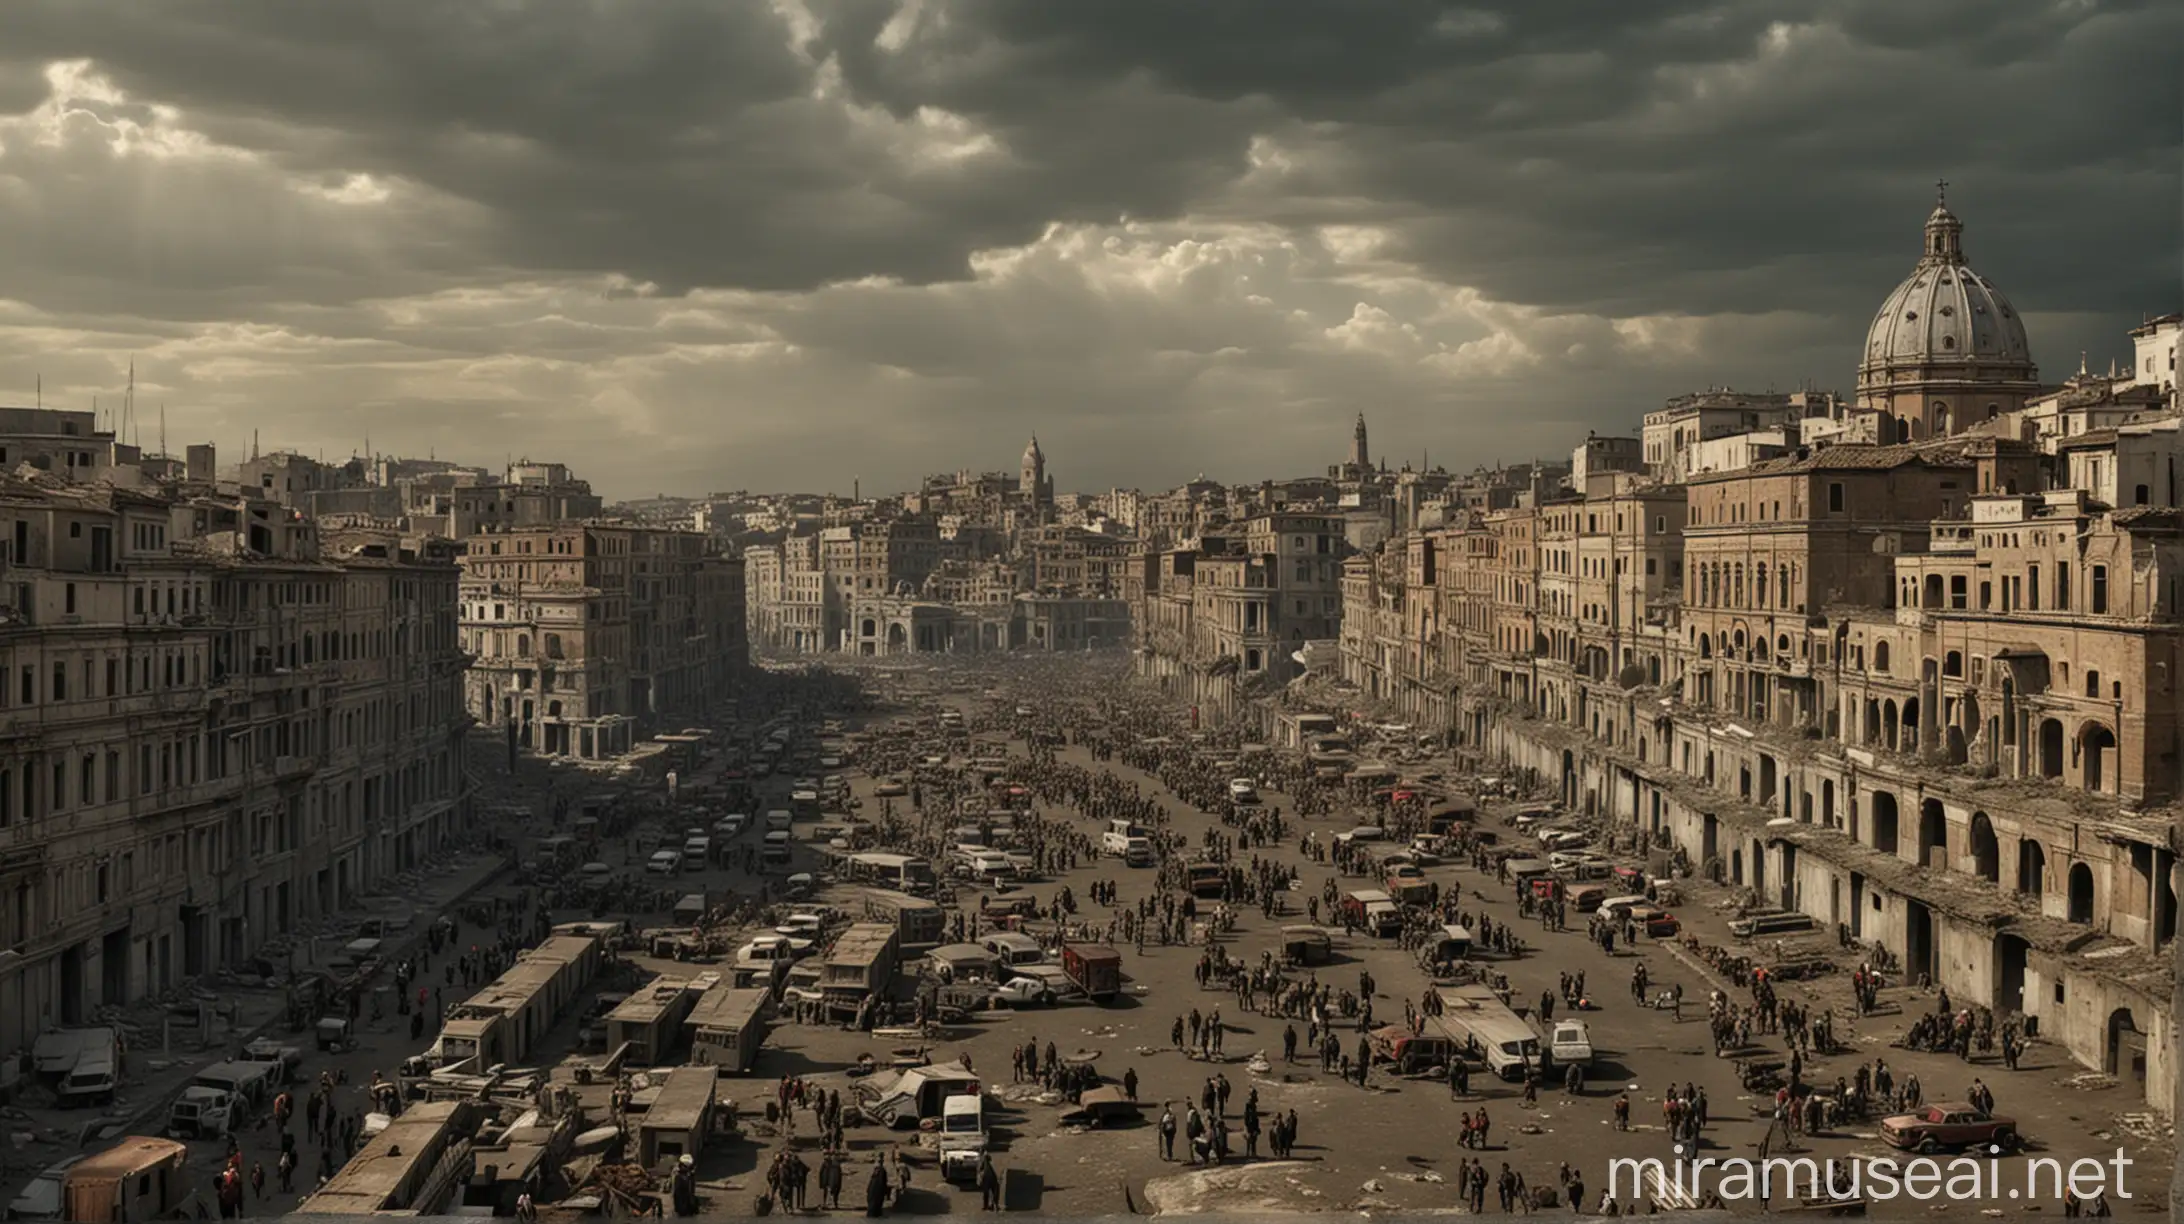 Apocalyptic Roma Futuristic Cityscape in 21st Century